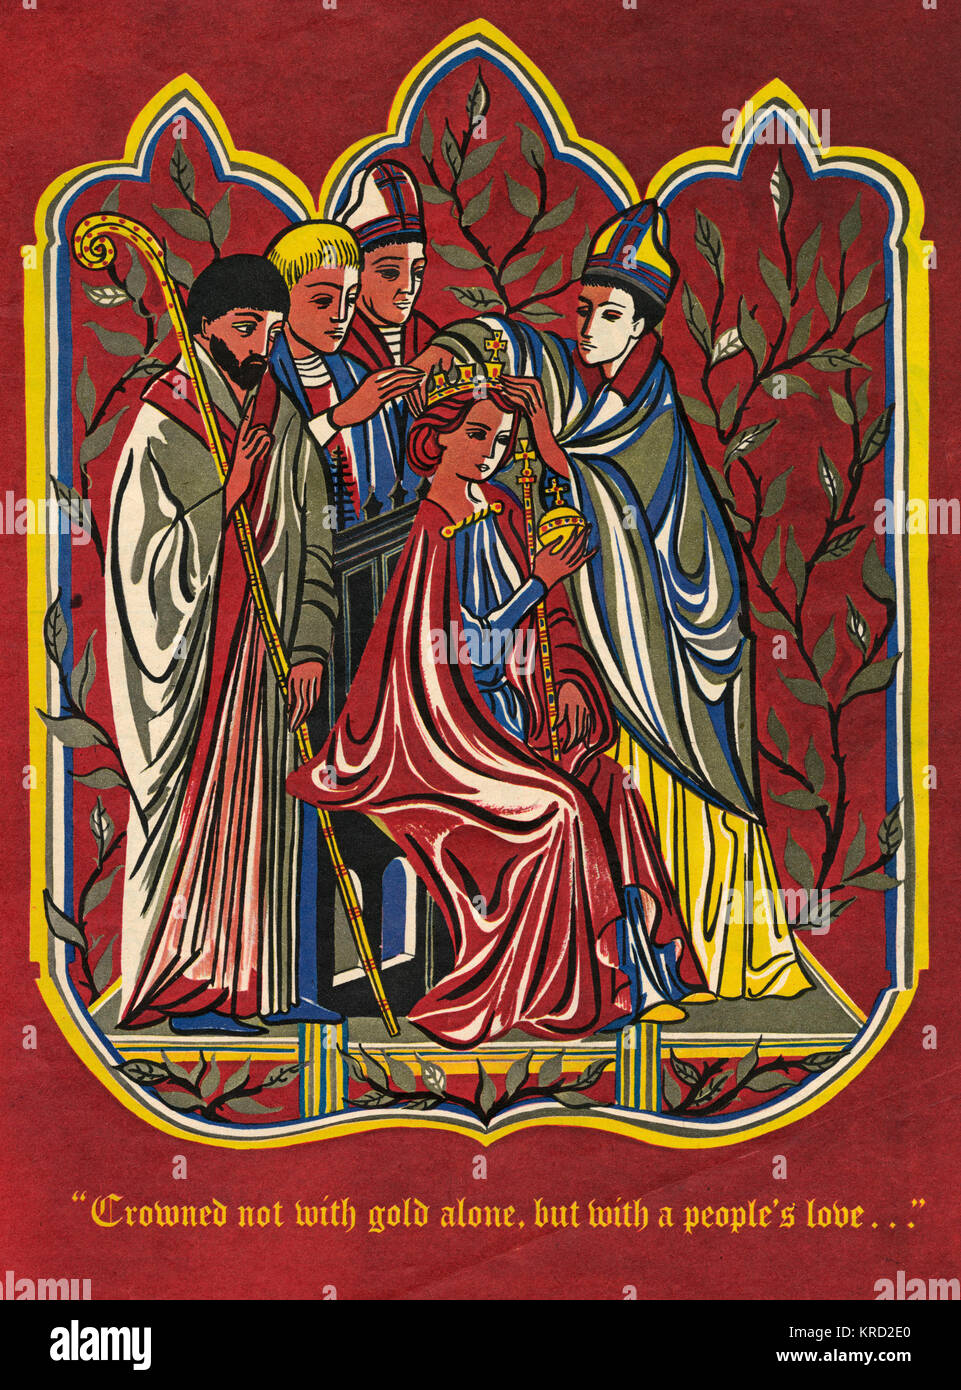 Uno stile medievale illustrazione che mostra una regina di essere coronata da un Arcivescovo, circondato da altri leader religiosi, una impronta stilizzata della cerimonia riprodotta in Everybody's Magazine incoronazione numero dal 1953. Data: 1953 Foto Stock